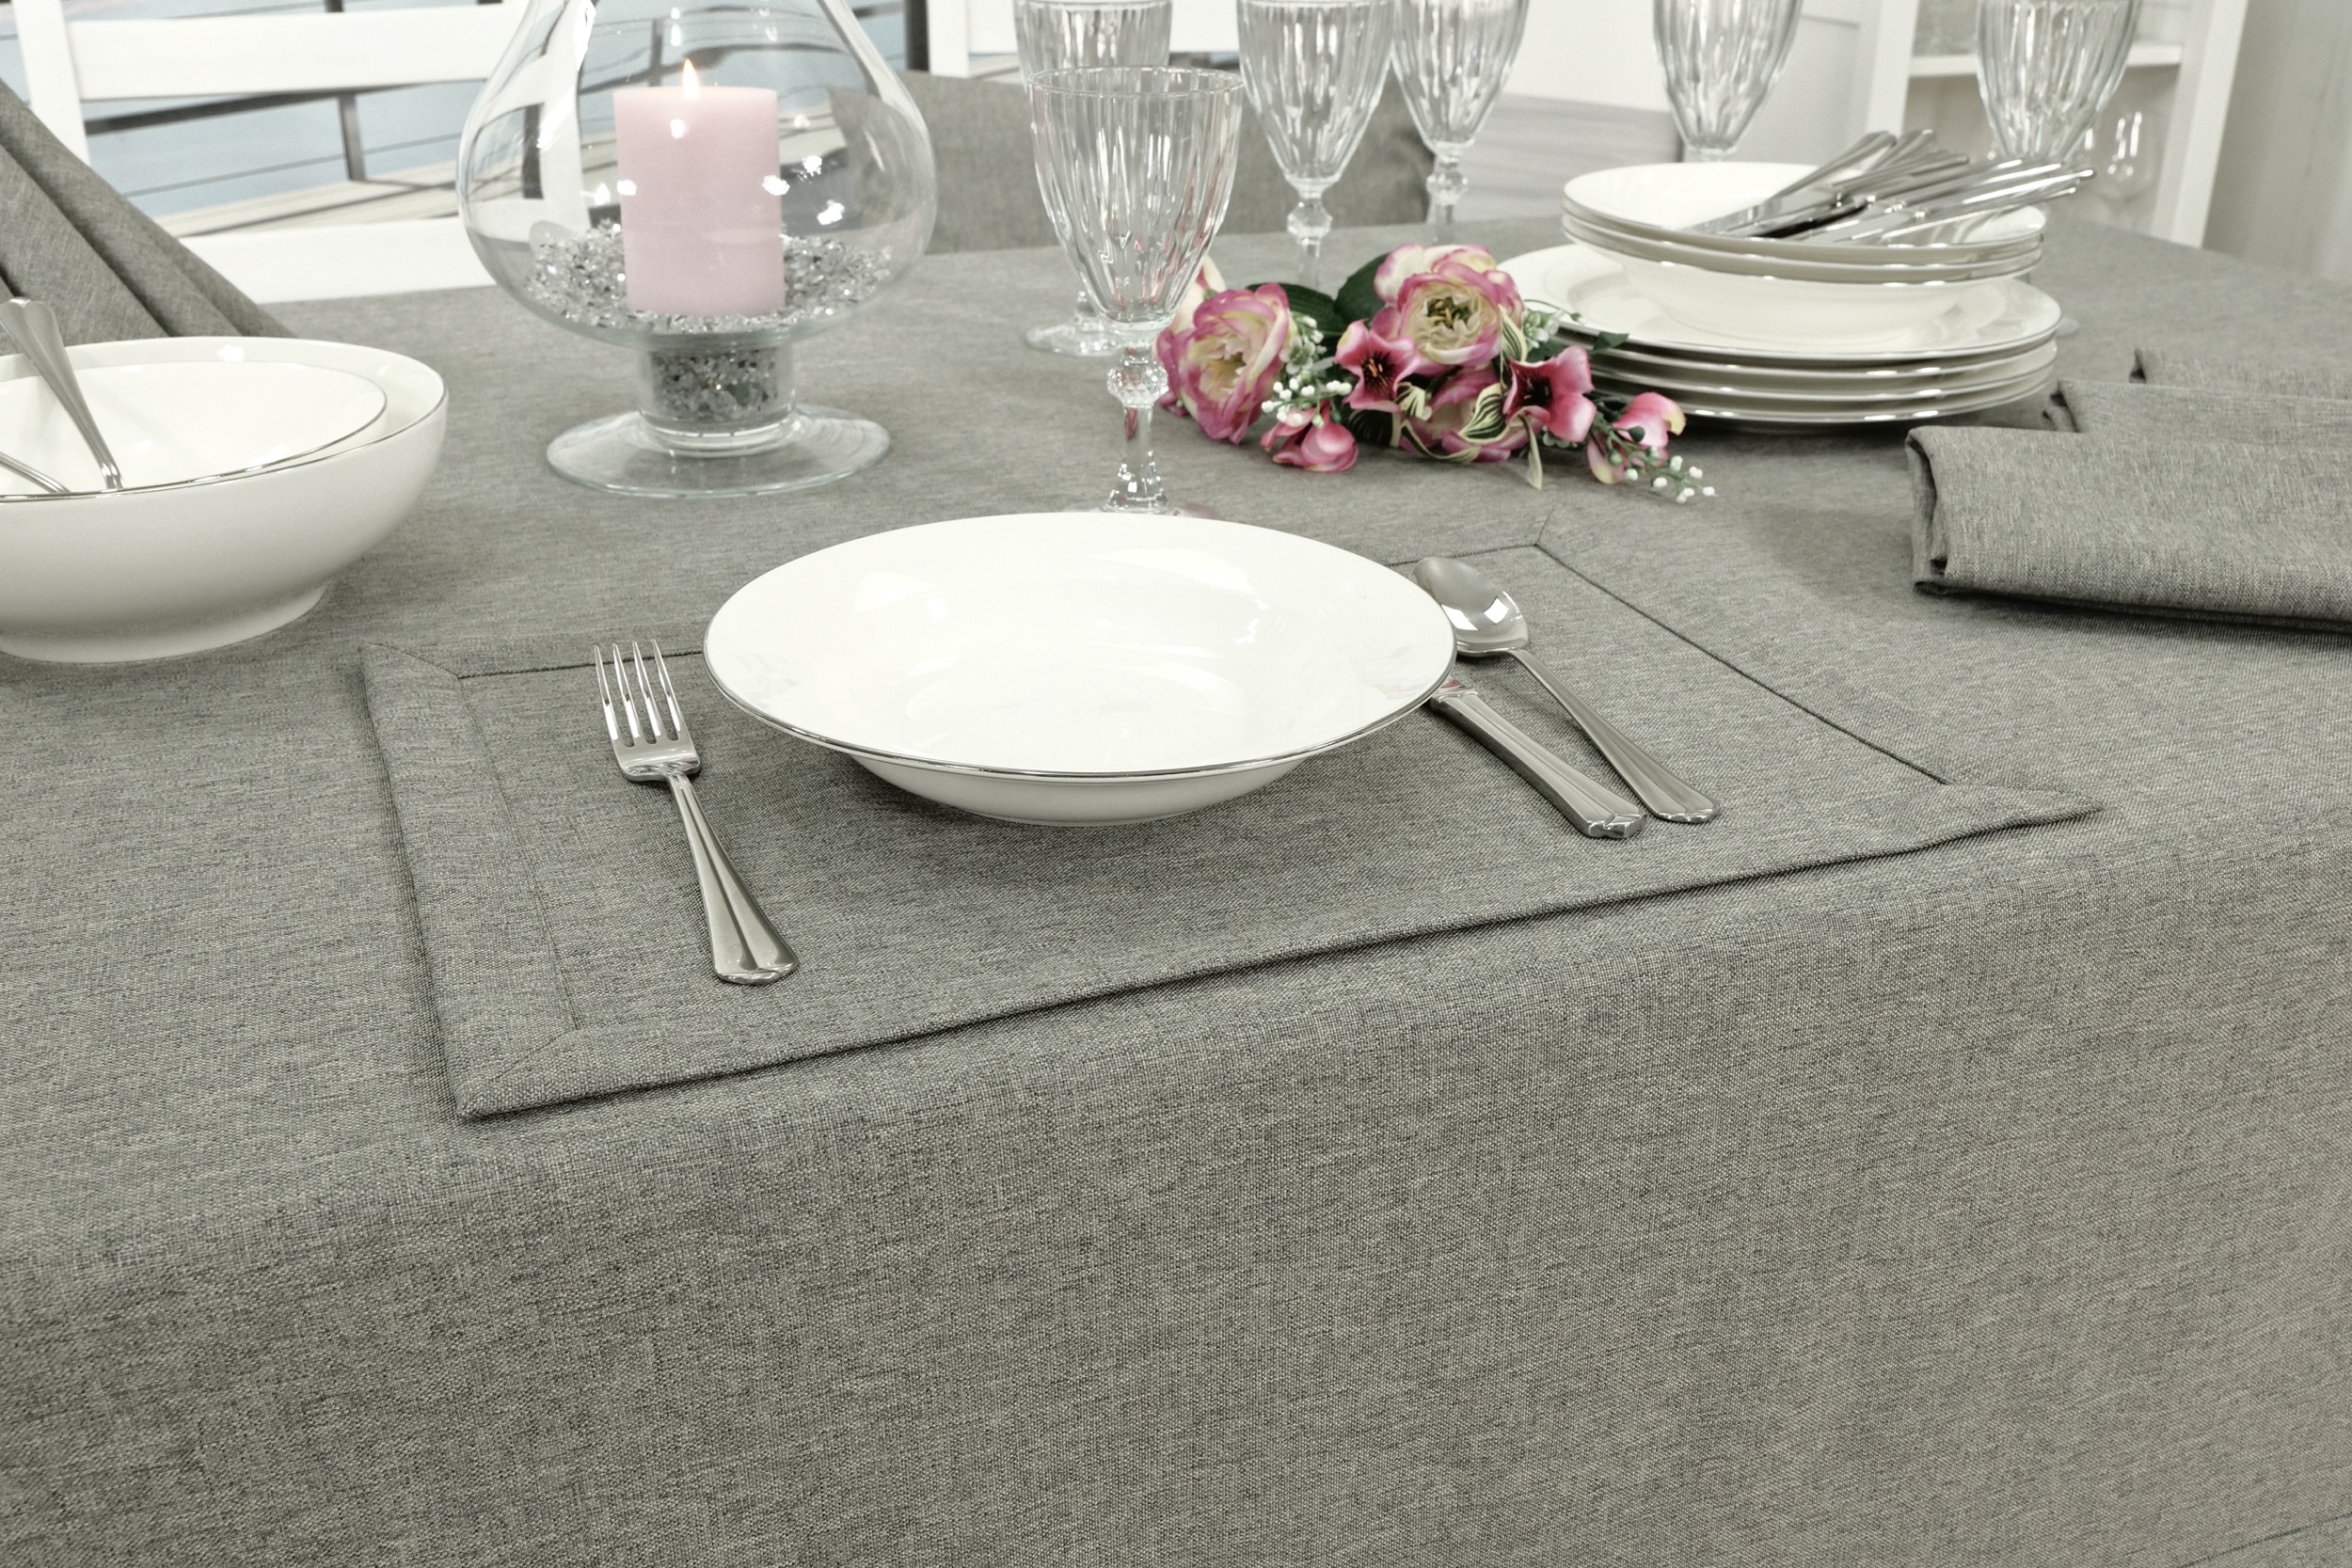 Edle Tischdecke Grau einfarbig Peony Breite 150 cm